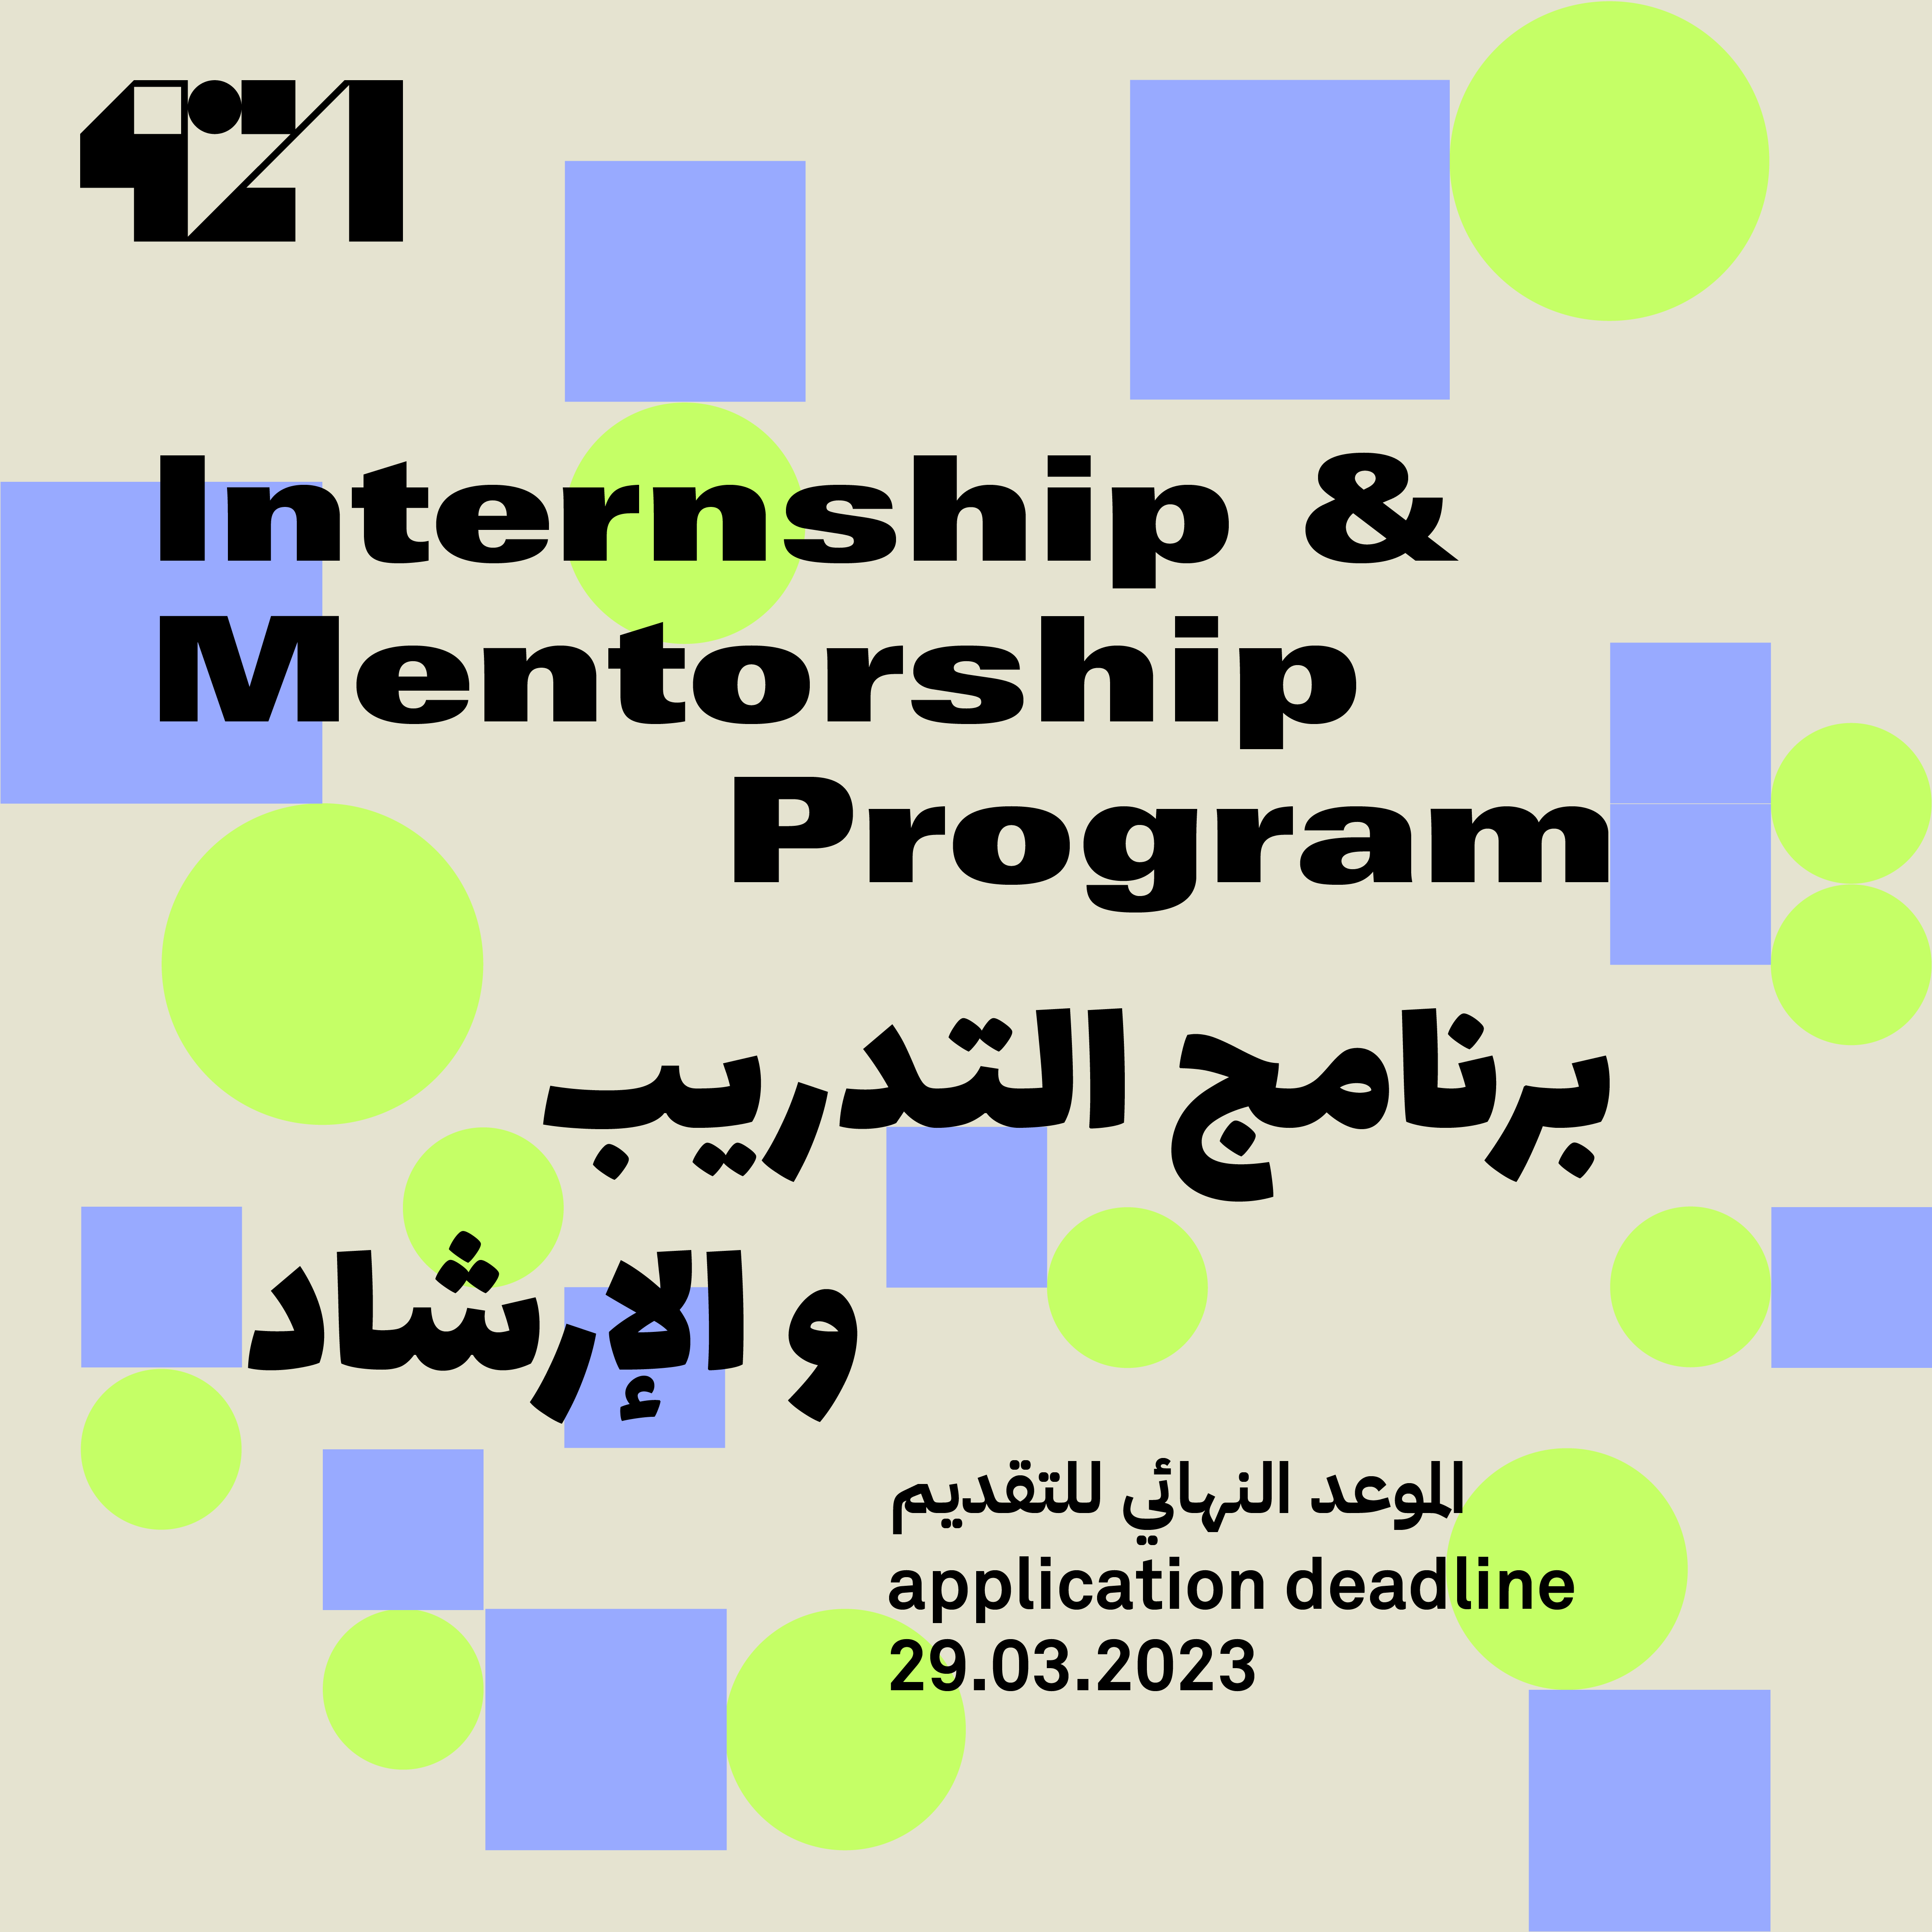 421-learning-programs-internship-mentorship-2-copy-63c50af2031ae.png (original)